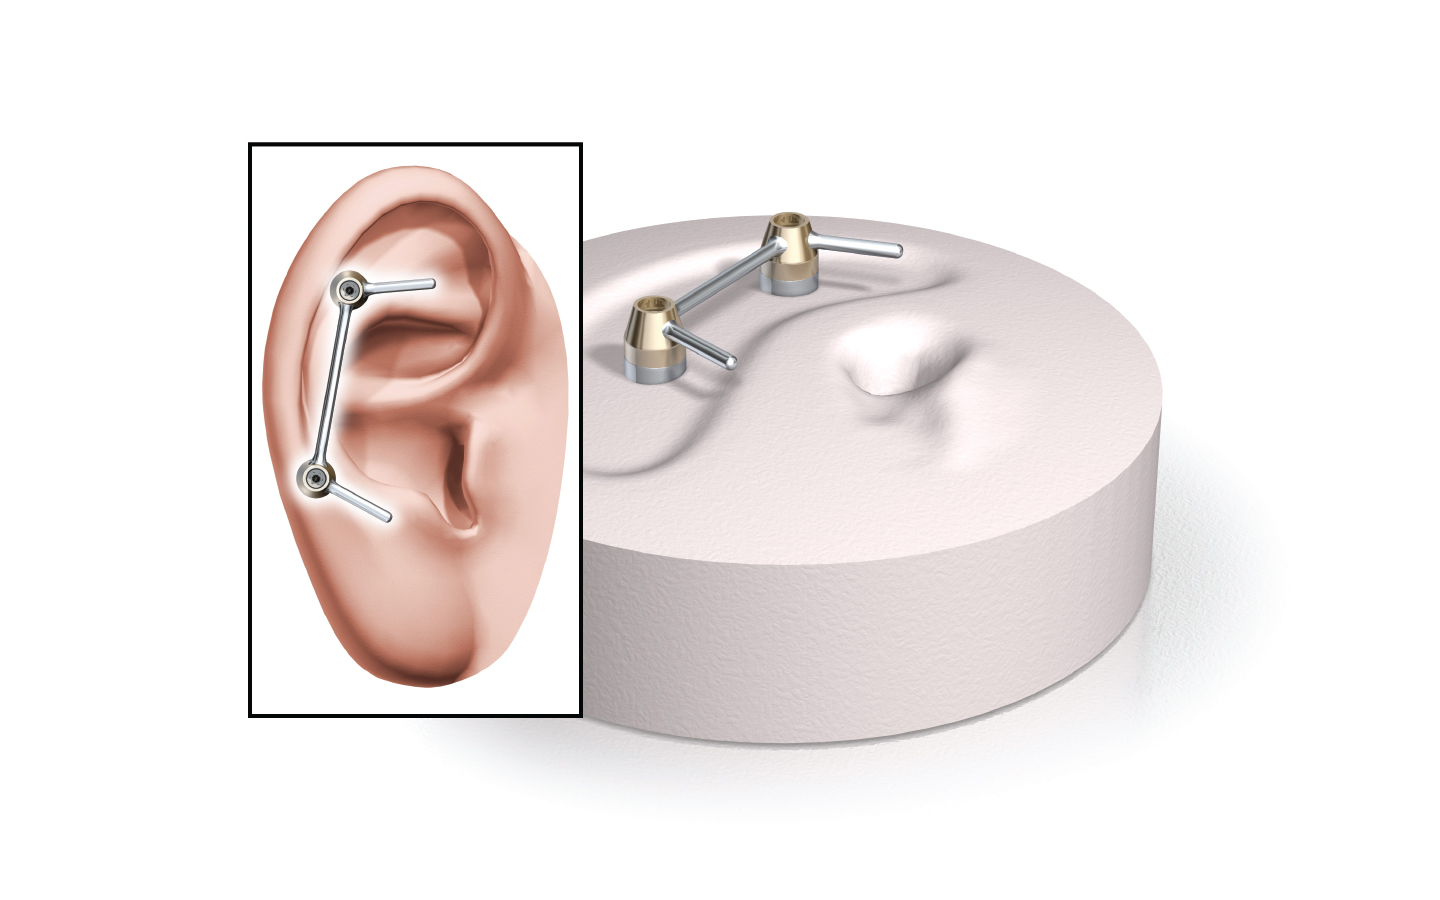 A Vistafix rendszer implantátumait és a fülprotézist bemutató ábra